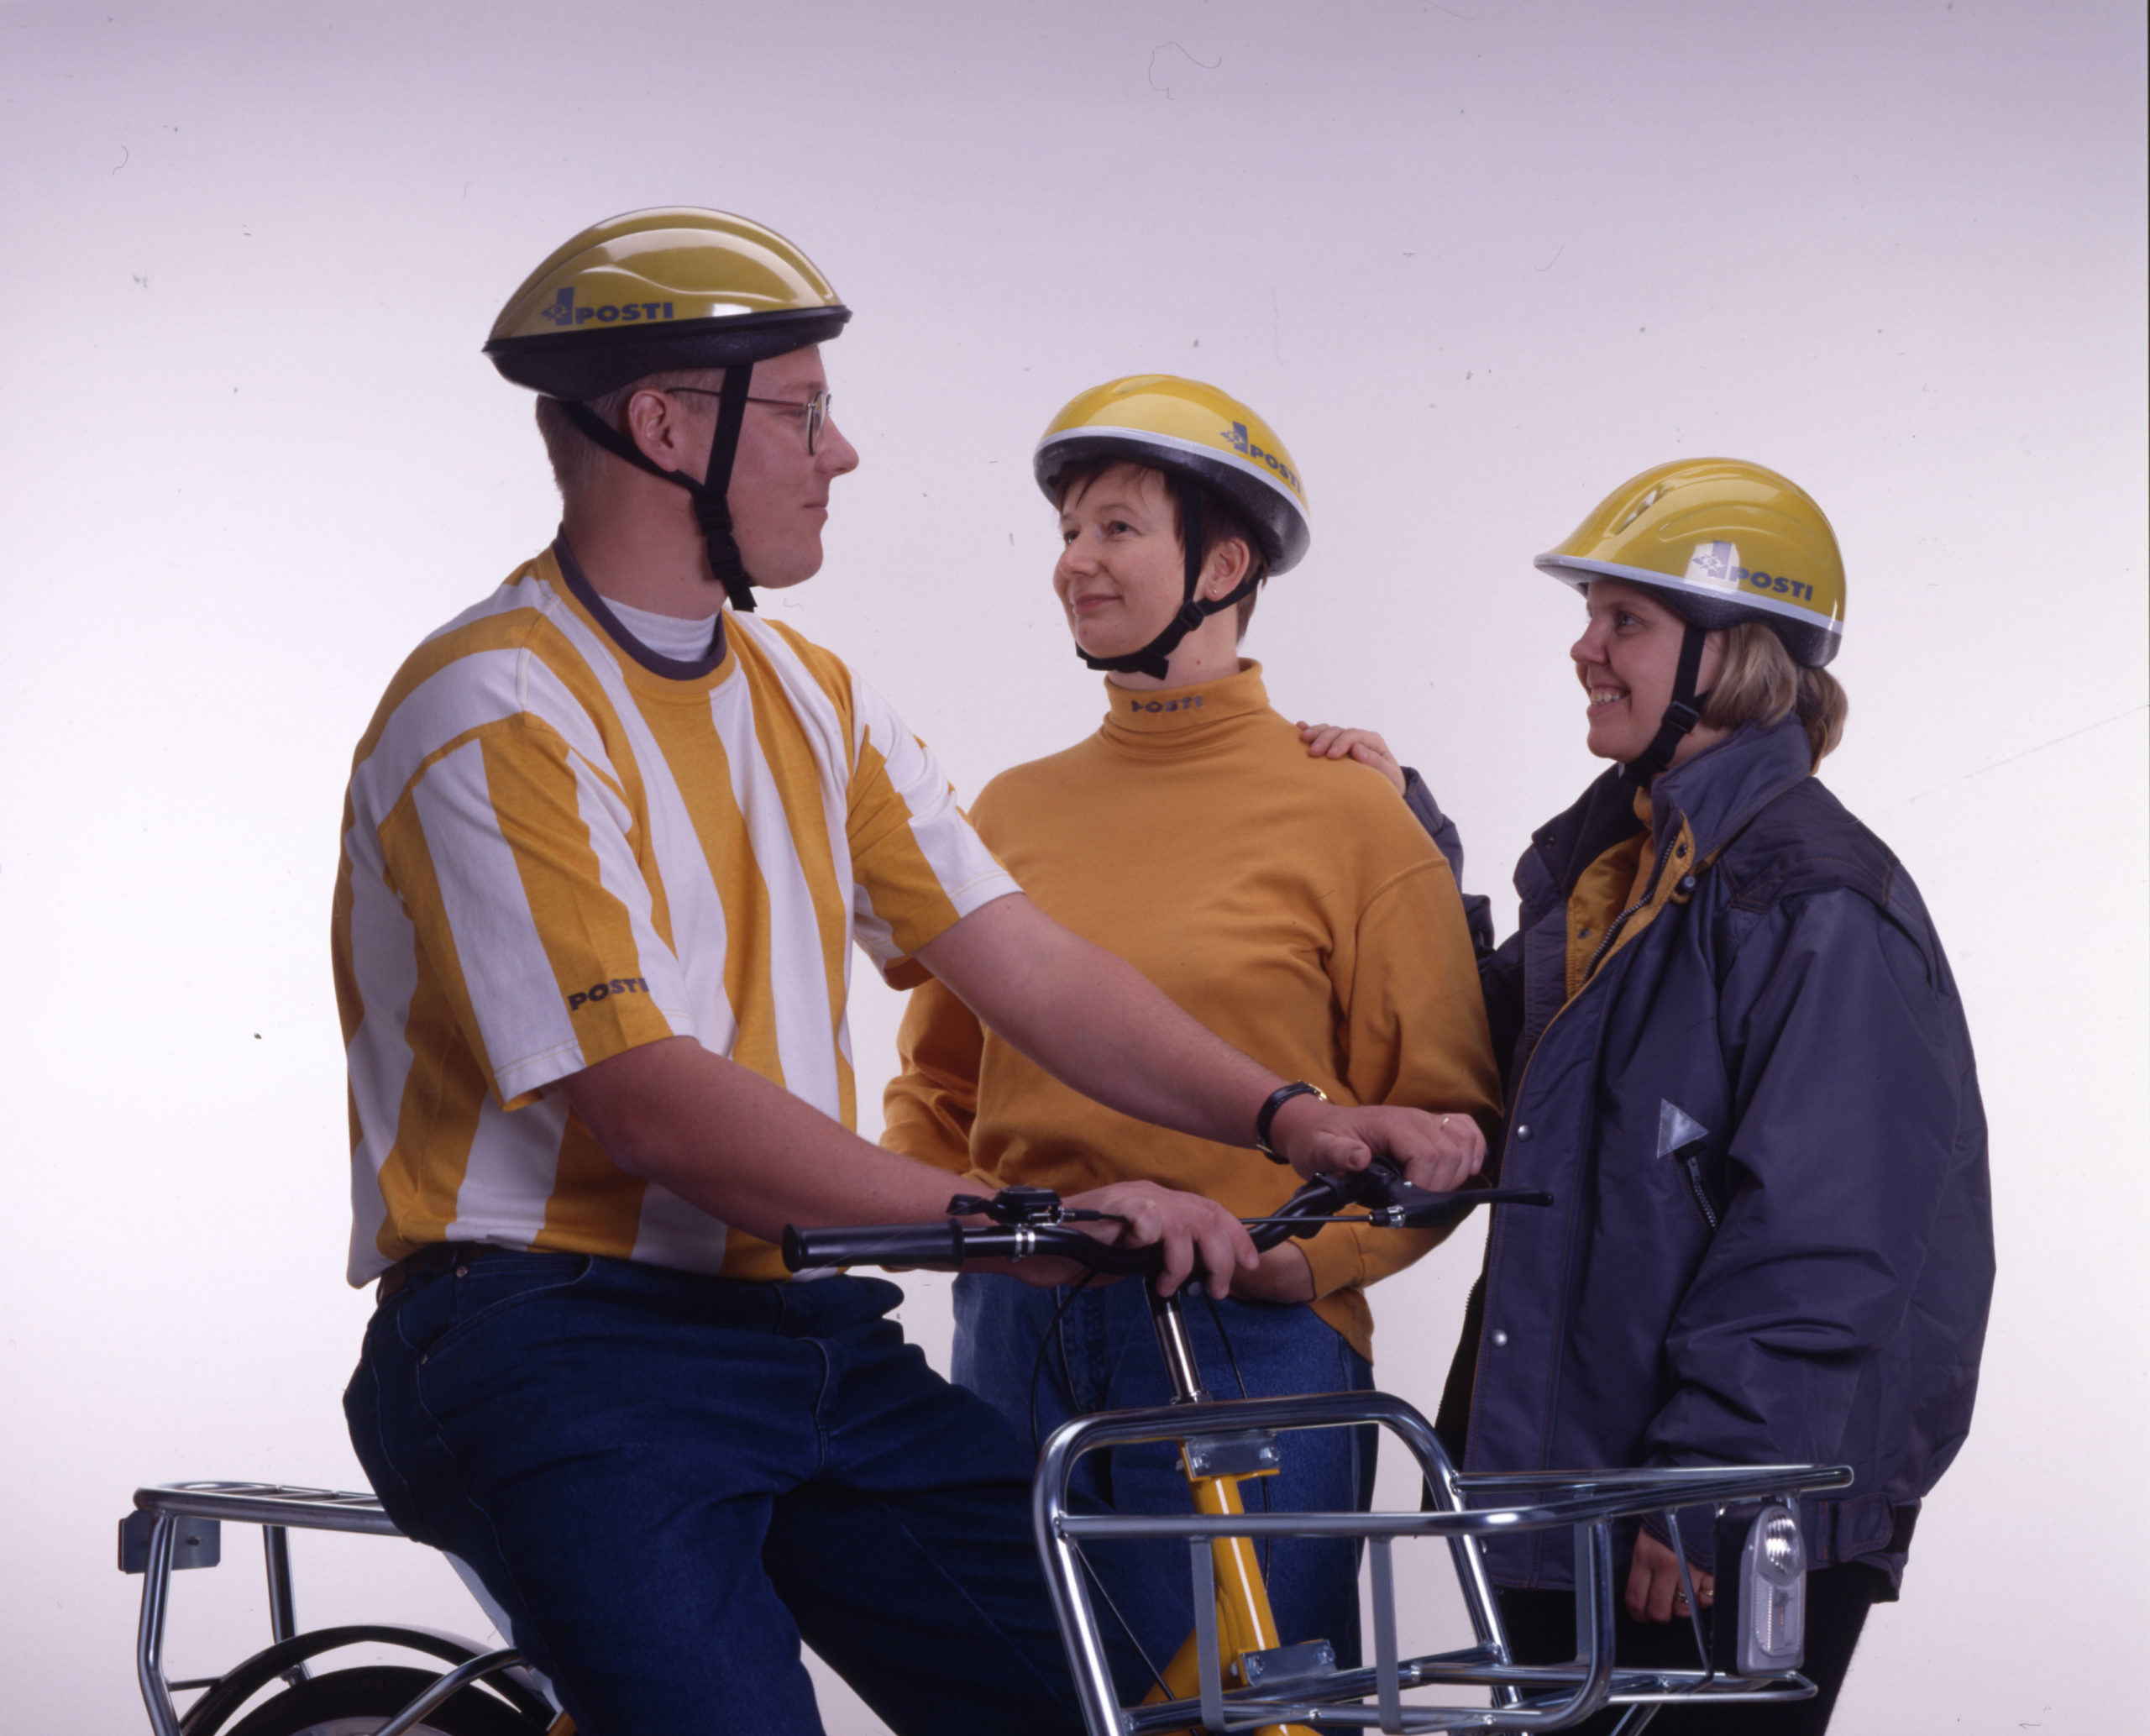 Kolme ihmistä postinjakajien vuoden 1996 asuissa. Jokaisella on keltainen kypärä. Jakelupyörän selässä olevalla on kelta-valkopystyraidallinen t-paita, vieressään olevalla keltainen kauluspusero ja reunimmaisilla harmaa kansitakki.